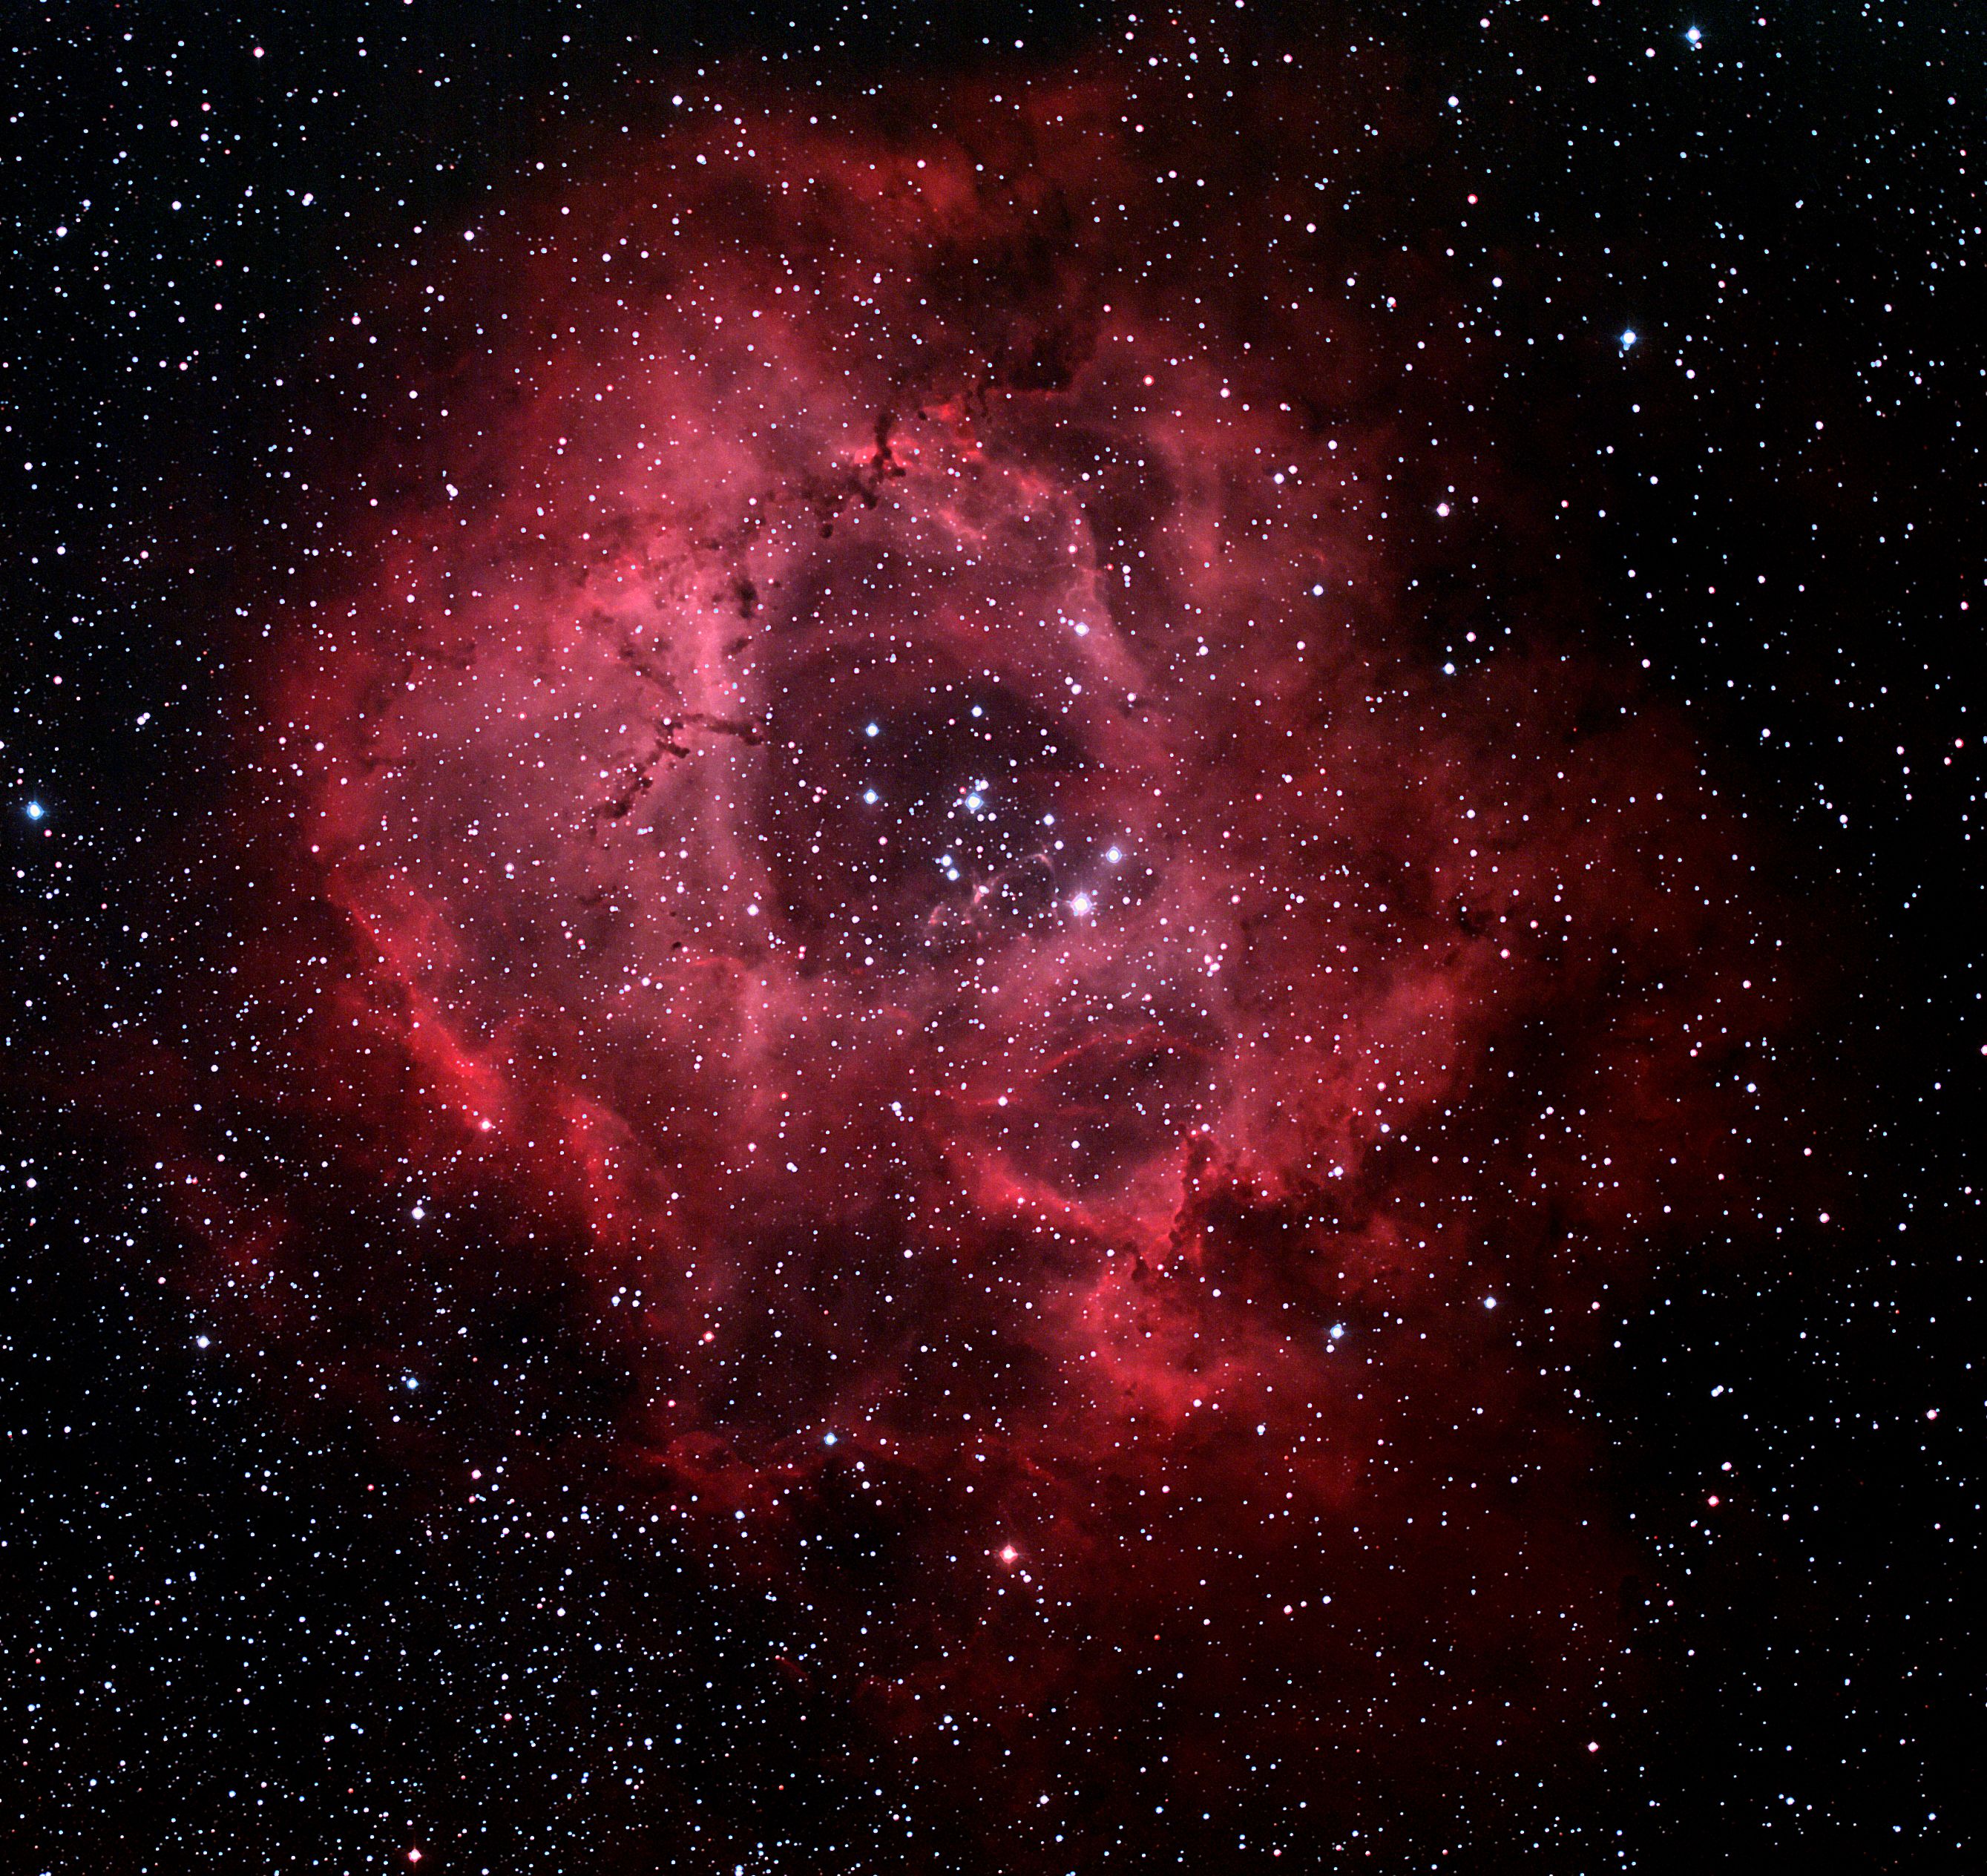 NGC-2244 - Caldwell 50